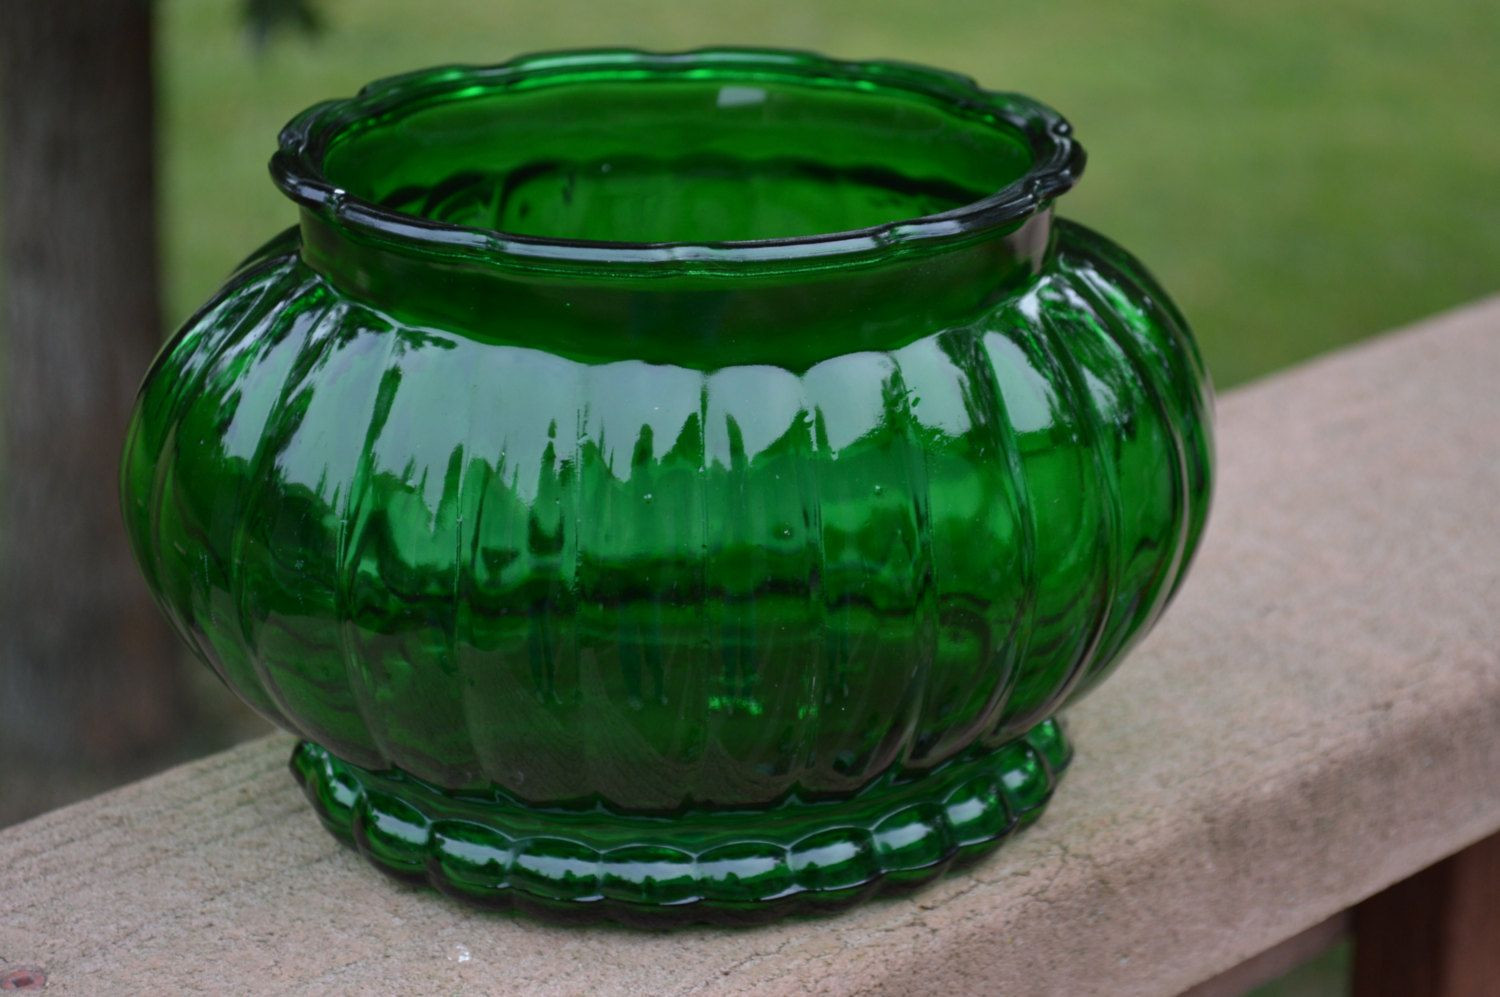 12 Best Viking Glass Green Vase 2024 free download viking glass green vase of green glass oval planter vase vase planters and glasses within green glass oval planter vase